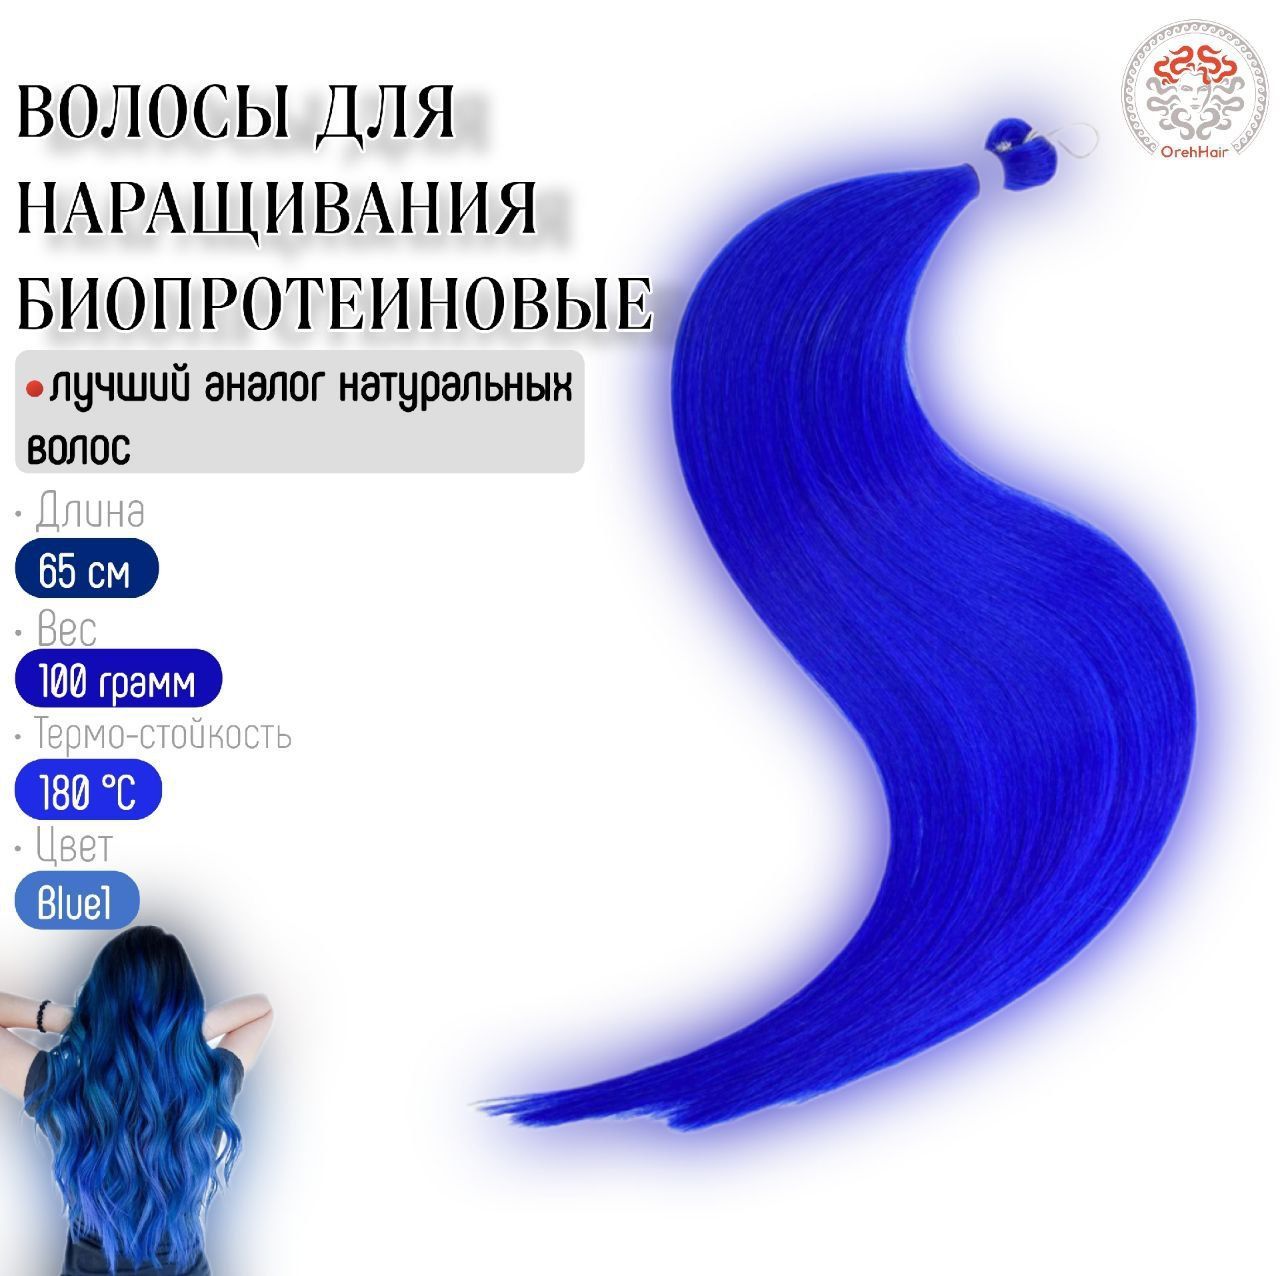 Биопротеиновое наращивание отзывы. Биопротеиновые волосы цвета. Биопротеиновый волос. Замещение биопротеиновыми волосами.